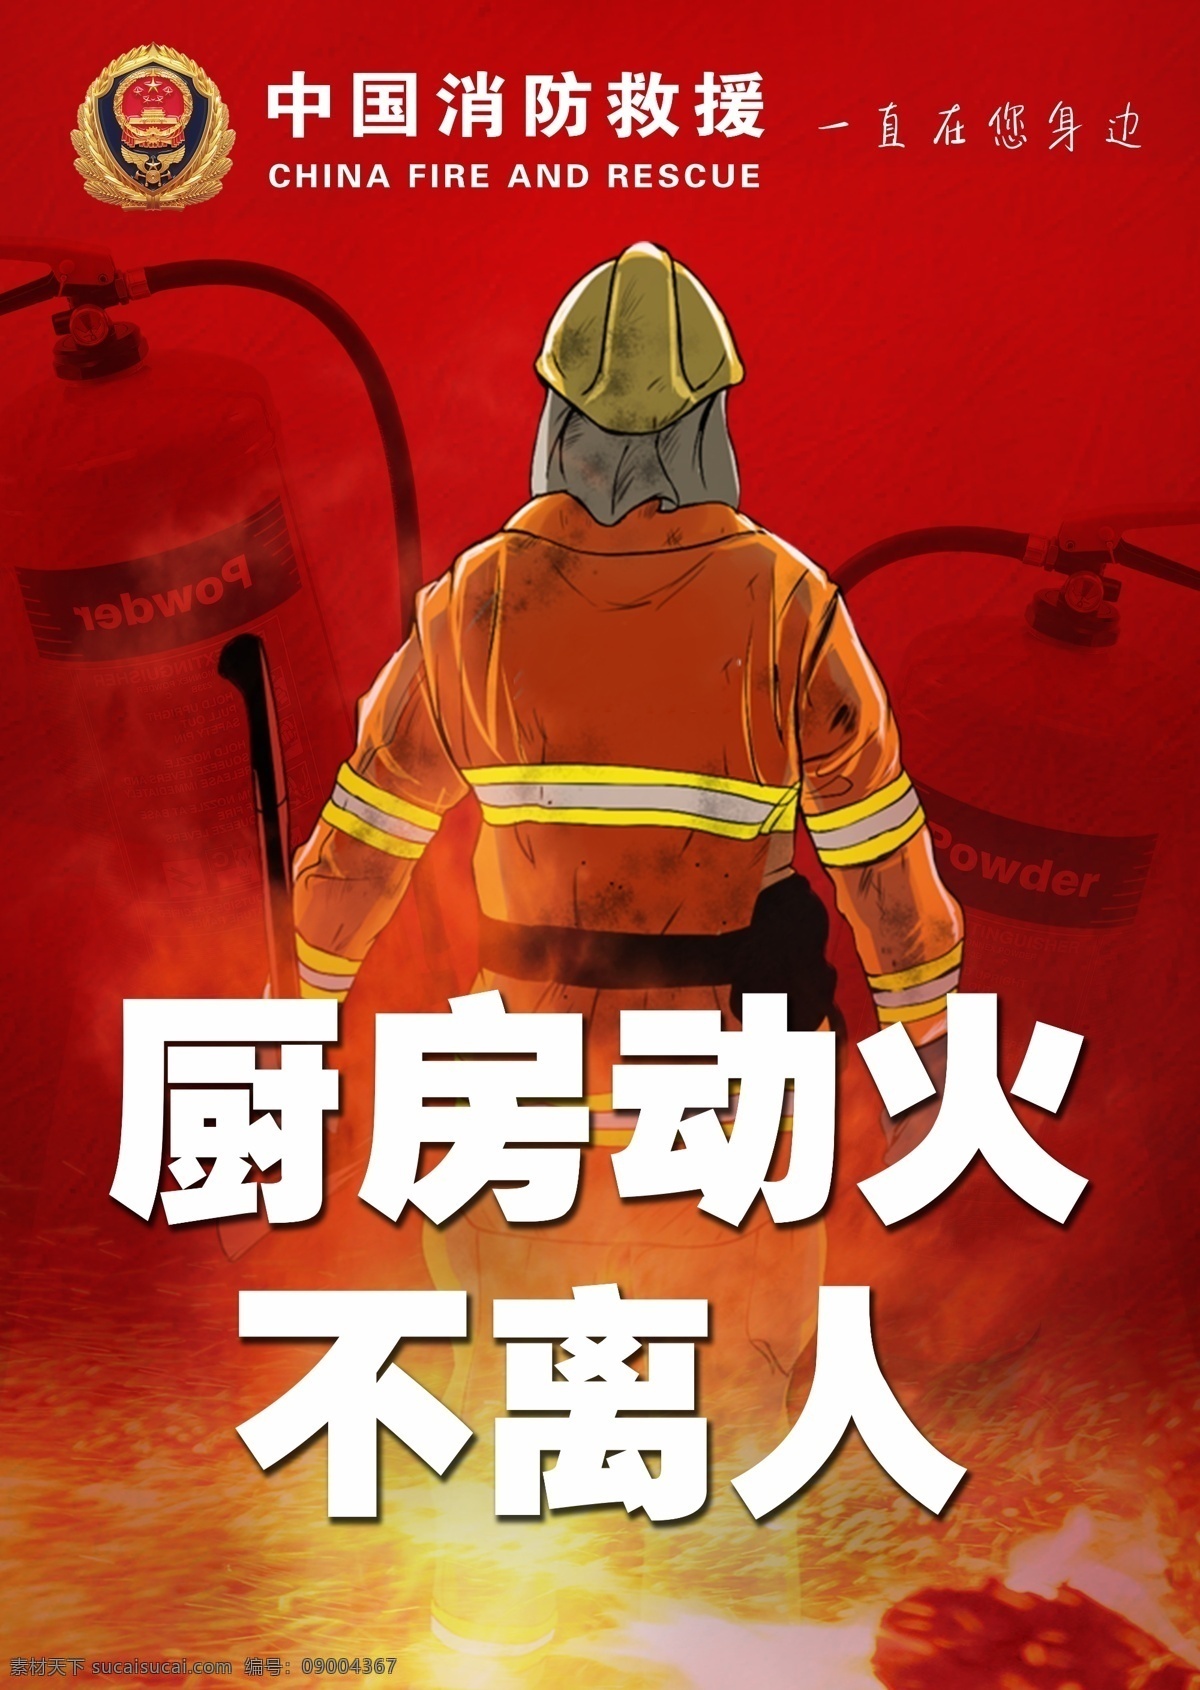 中国消防 红色防火 厨房防火 灭火器 消防兵 消防安全